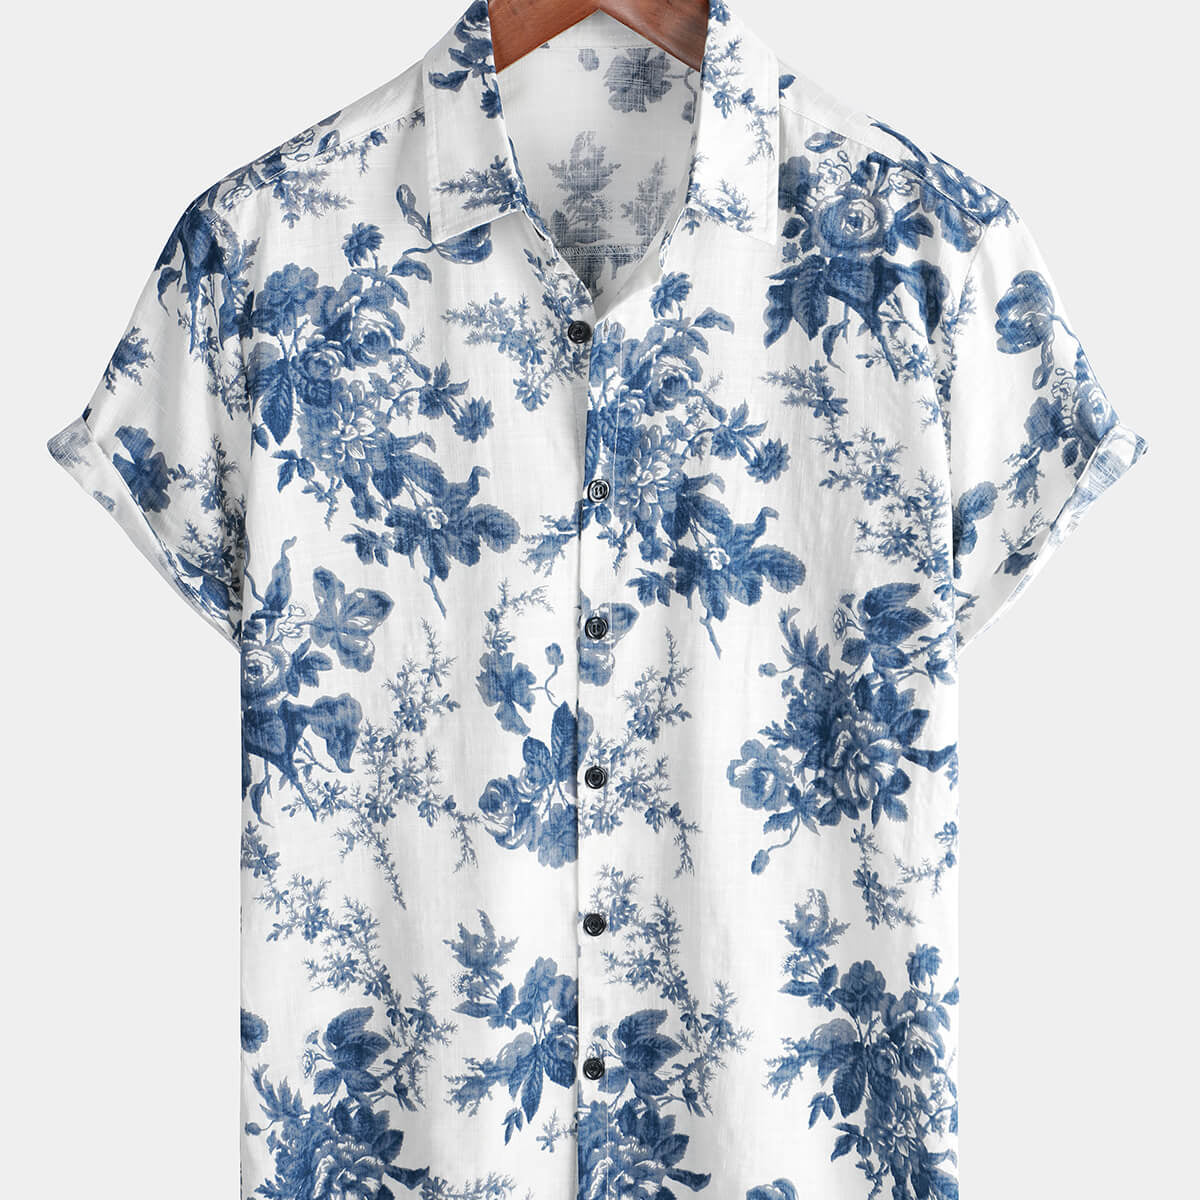 Men's Cotton Floral Button Up Holiday Summer Beach Hawaiian Shirt